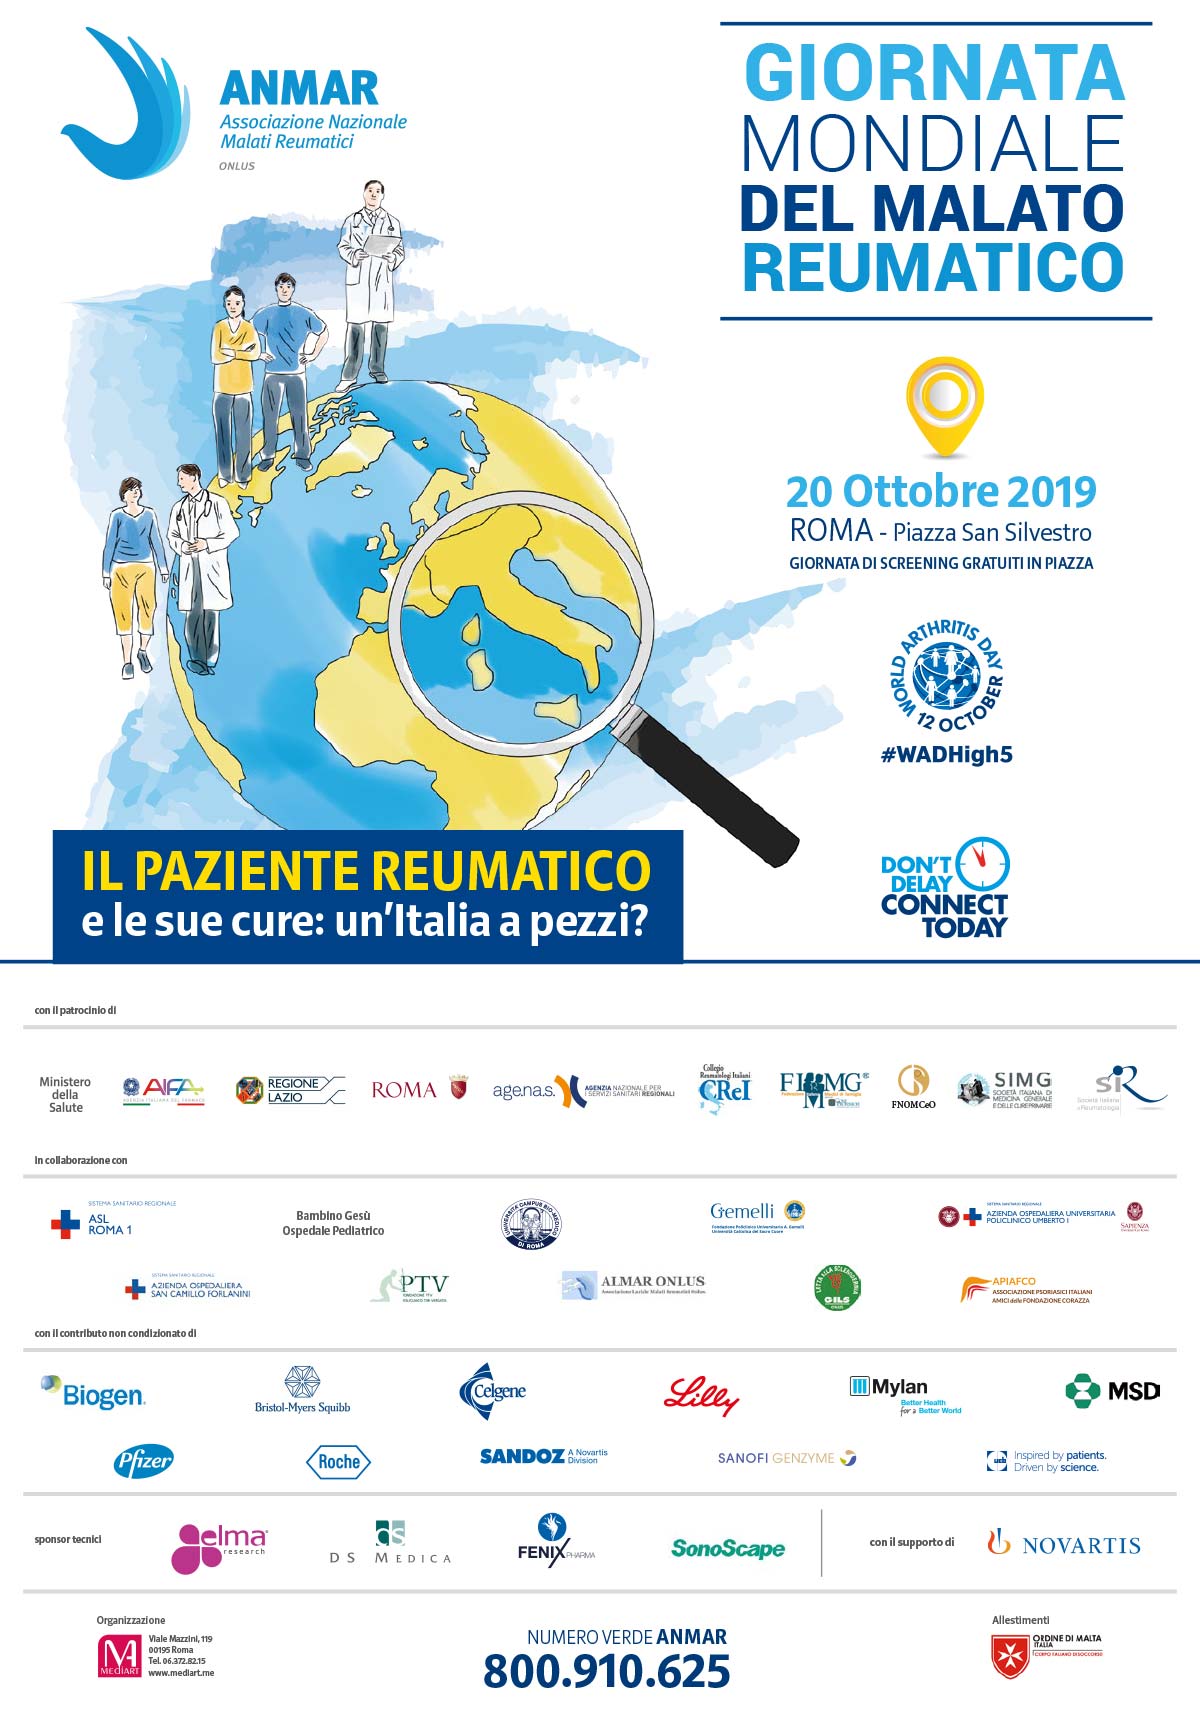 ANMAR.Giornata-Mondiale-del-Reumatico-2019.poster